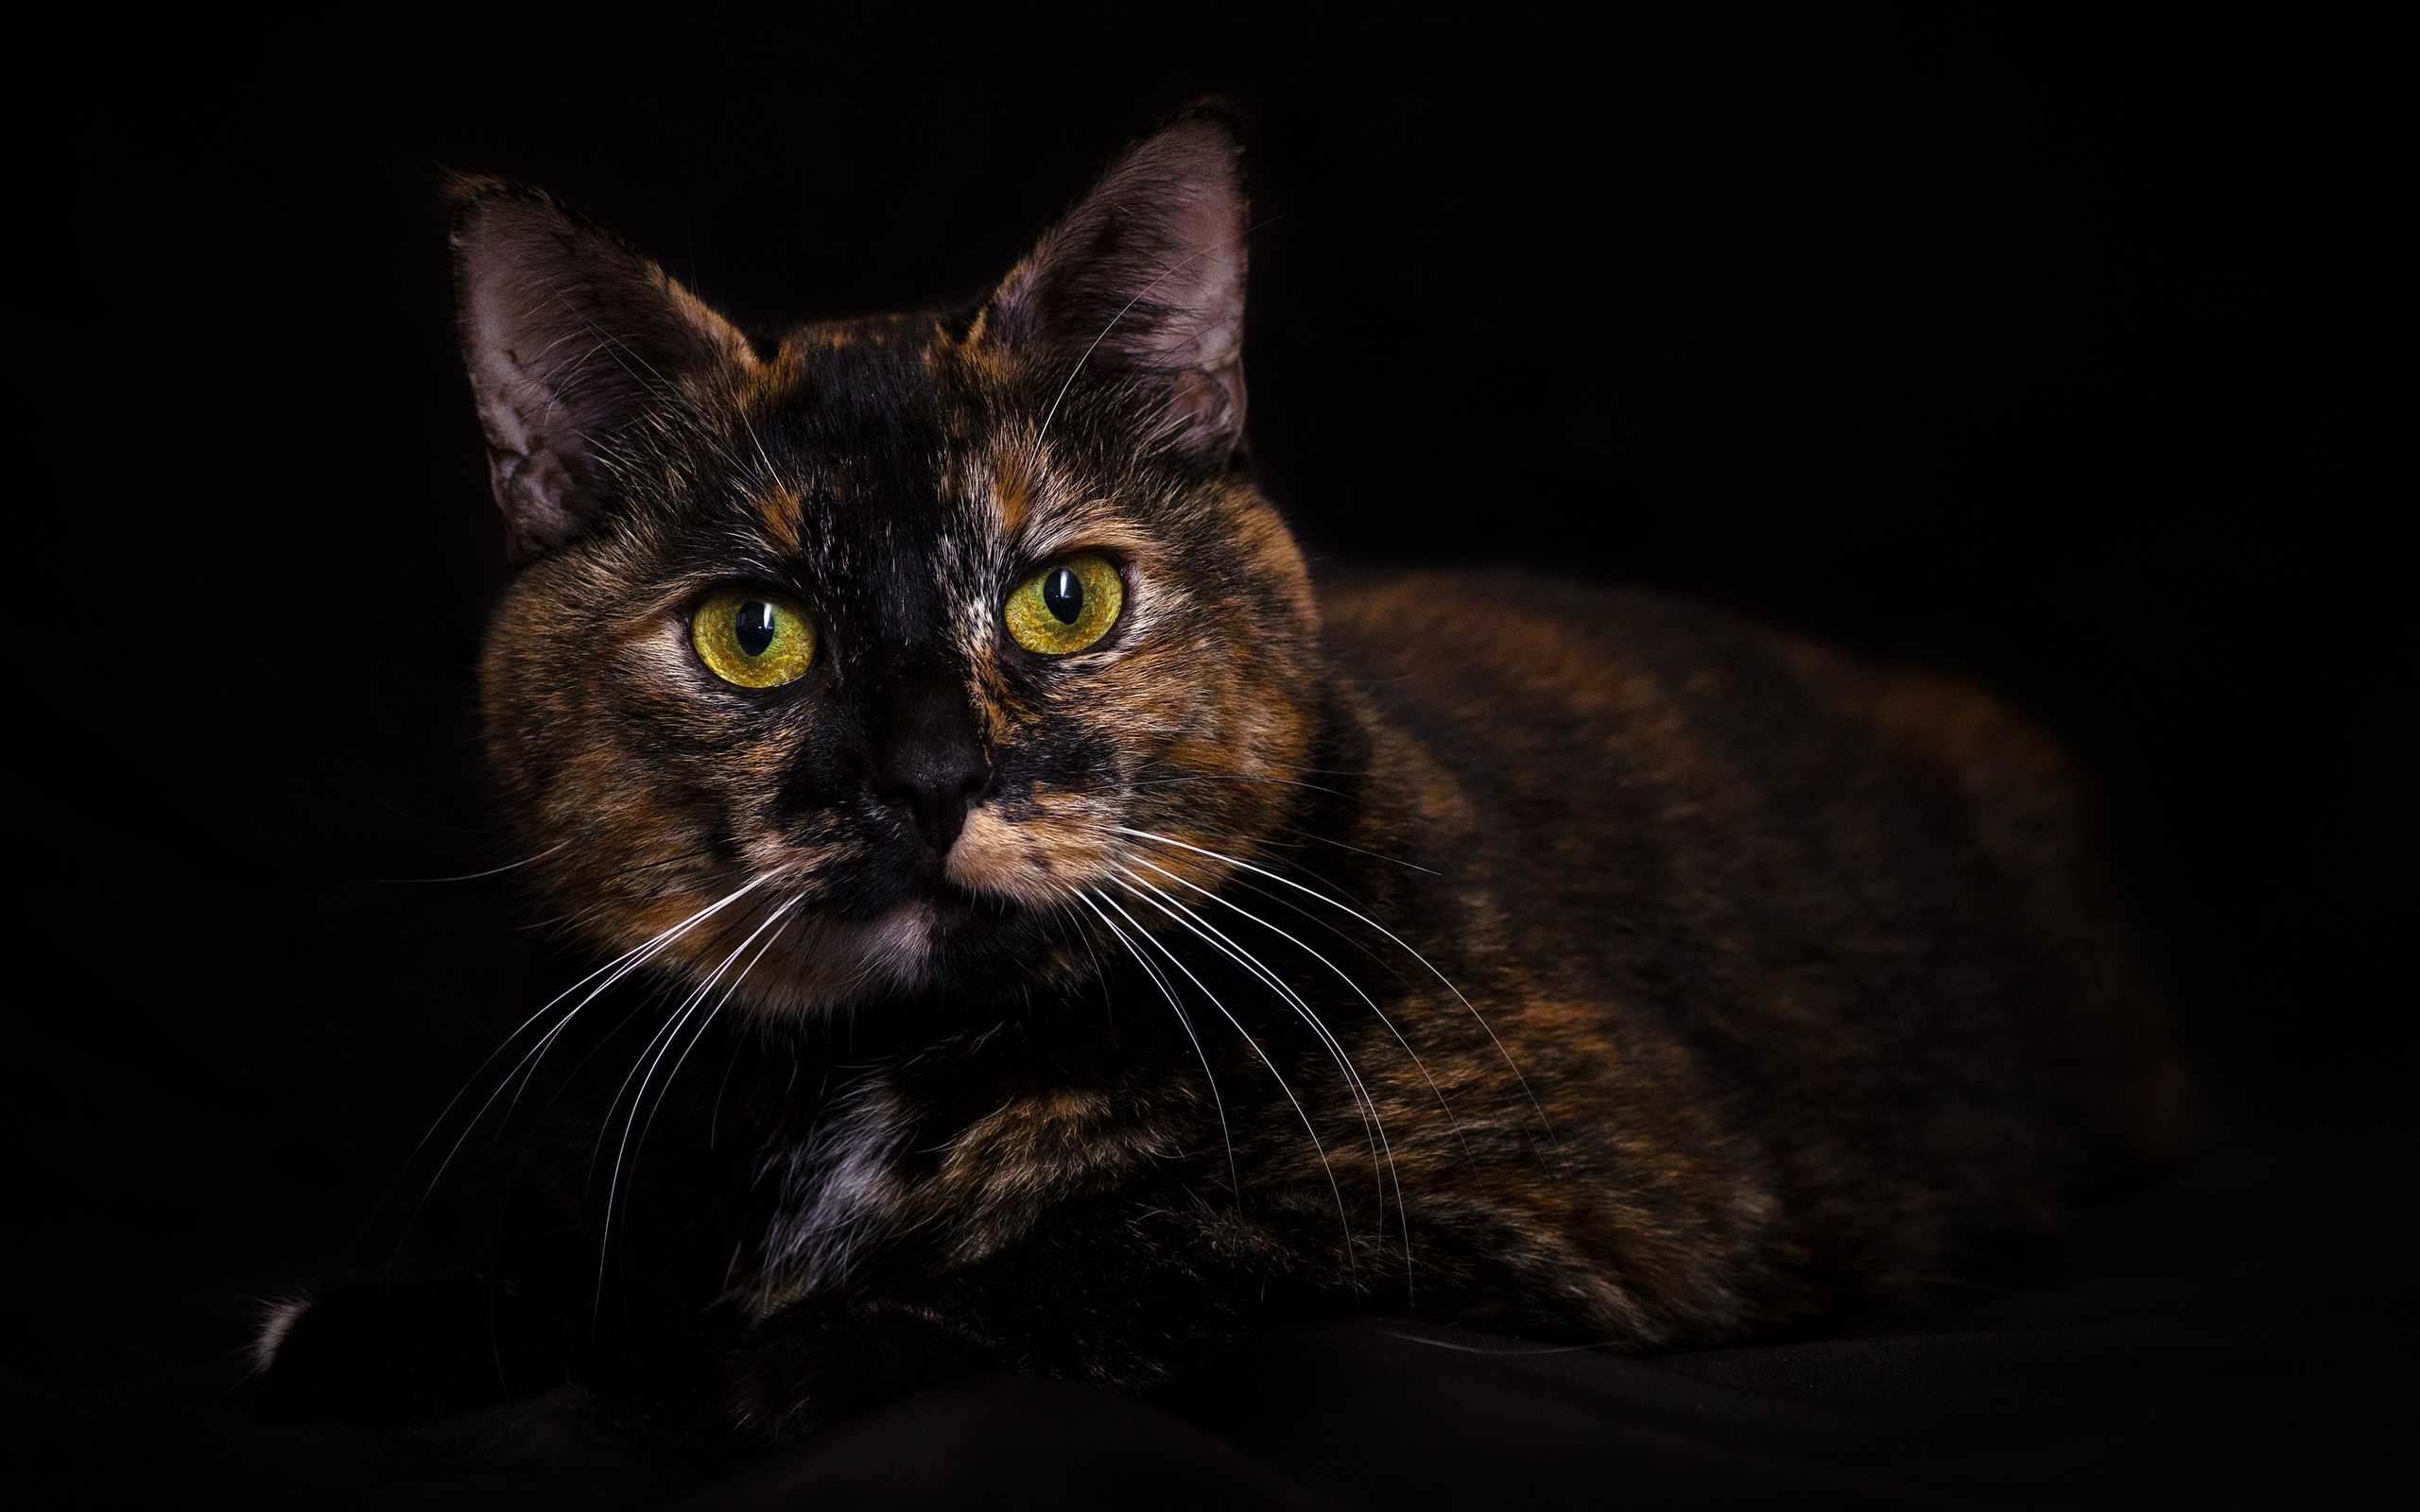 Кошка черная с рыжими пятнами порода. Черно рыжая черепаховая кошка. Европейская короткошерстная черепаховая. Британская черепаховая кошка. Черная кошка с черепаховым окрасом.